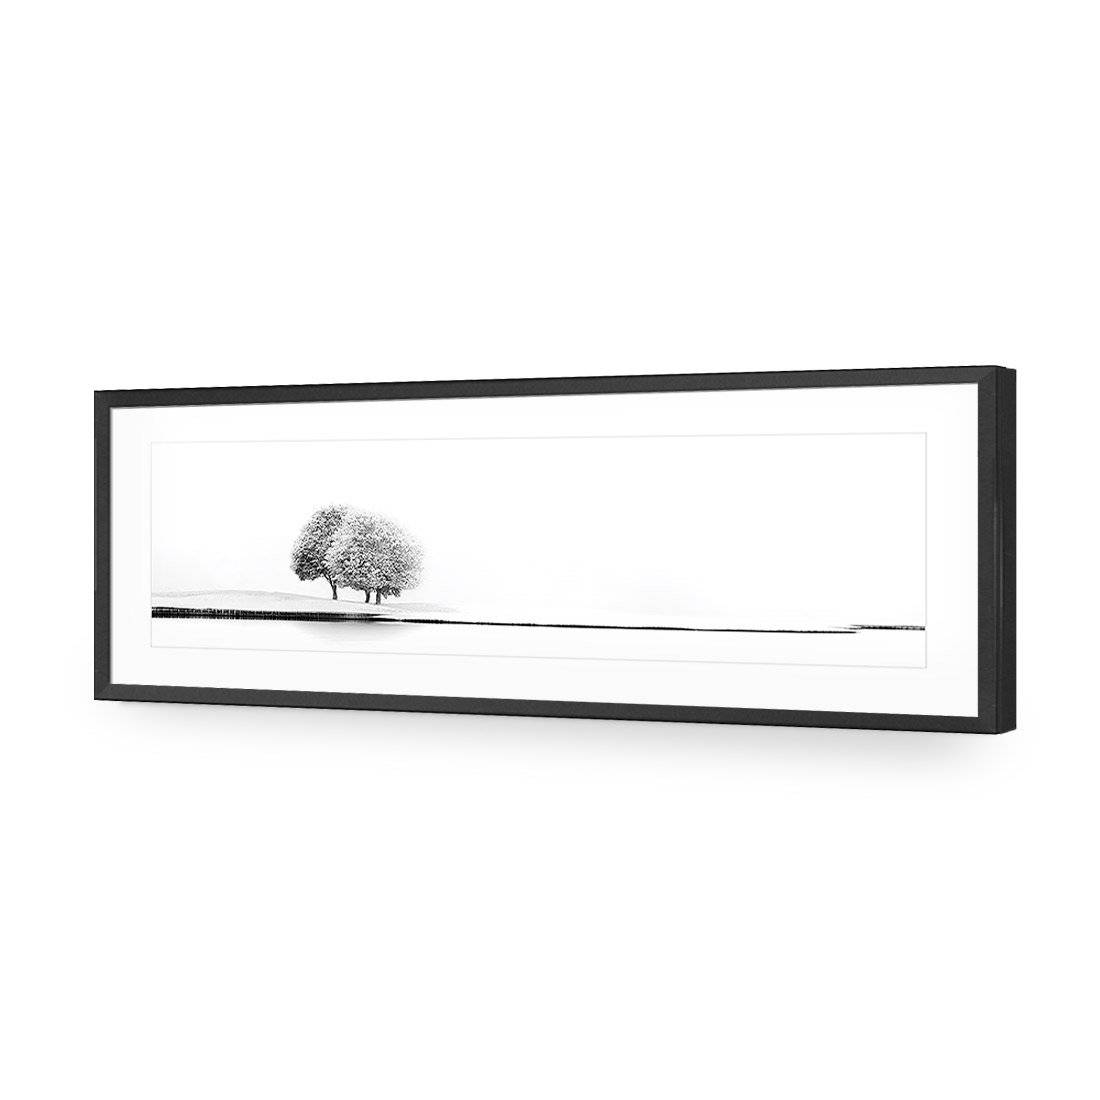 United Again by Marc Huybrighs-Acrylic-Wall Art Design-With Border-Acrylic - Black Frame-60x20cm-Wall Art Designs